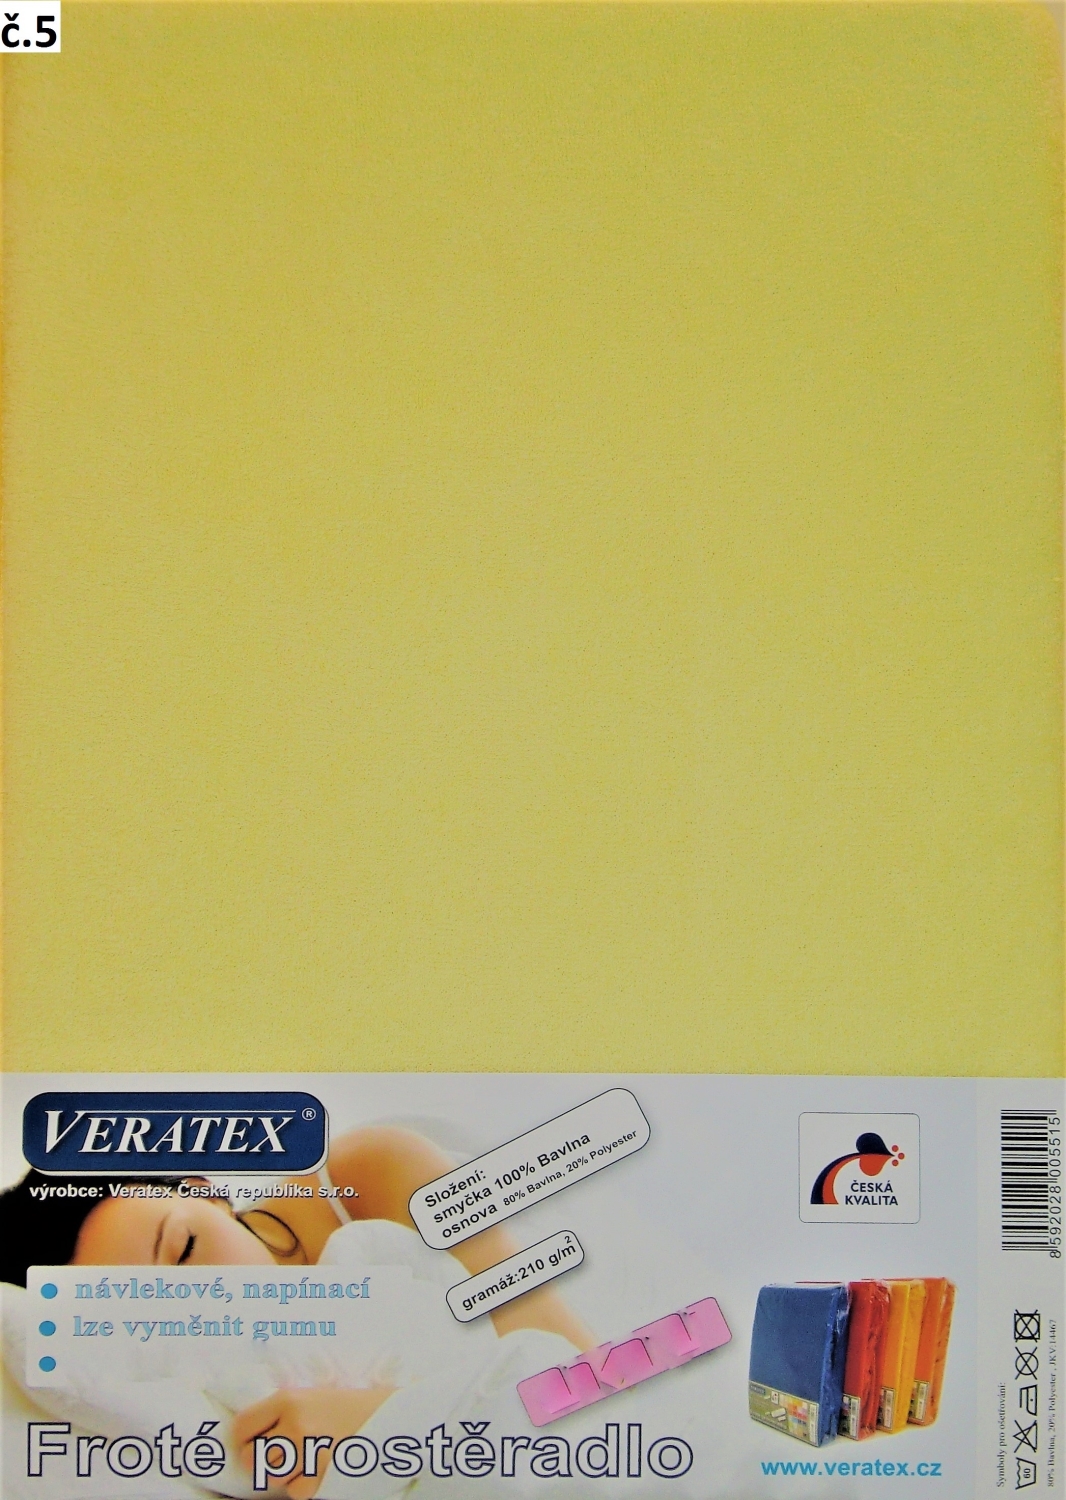 Veratex Froté prostěradlo dvoulůžko 180x200 cm (č. 5-sv.žlutá)